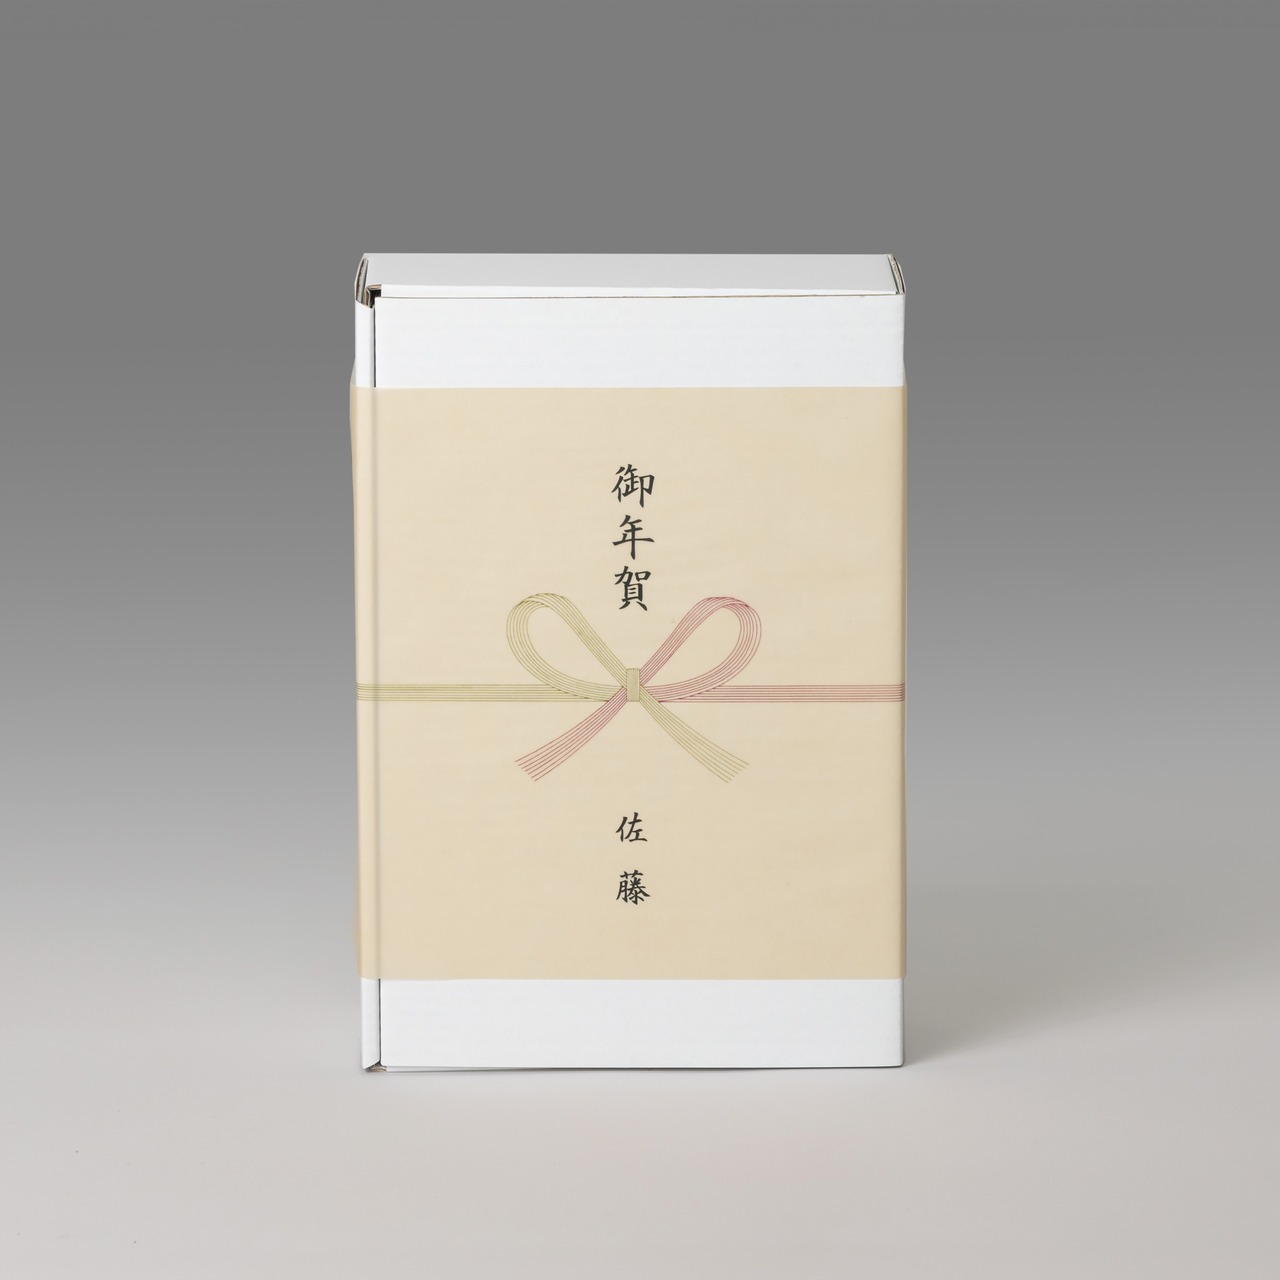 大地の米1㎏・大地のおかず2種・日本酒 純米無濾過原酒　ギフトセット /  Gift Set